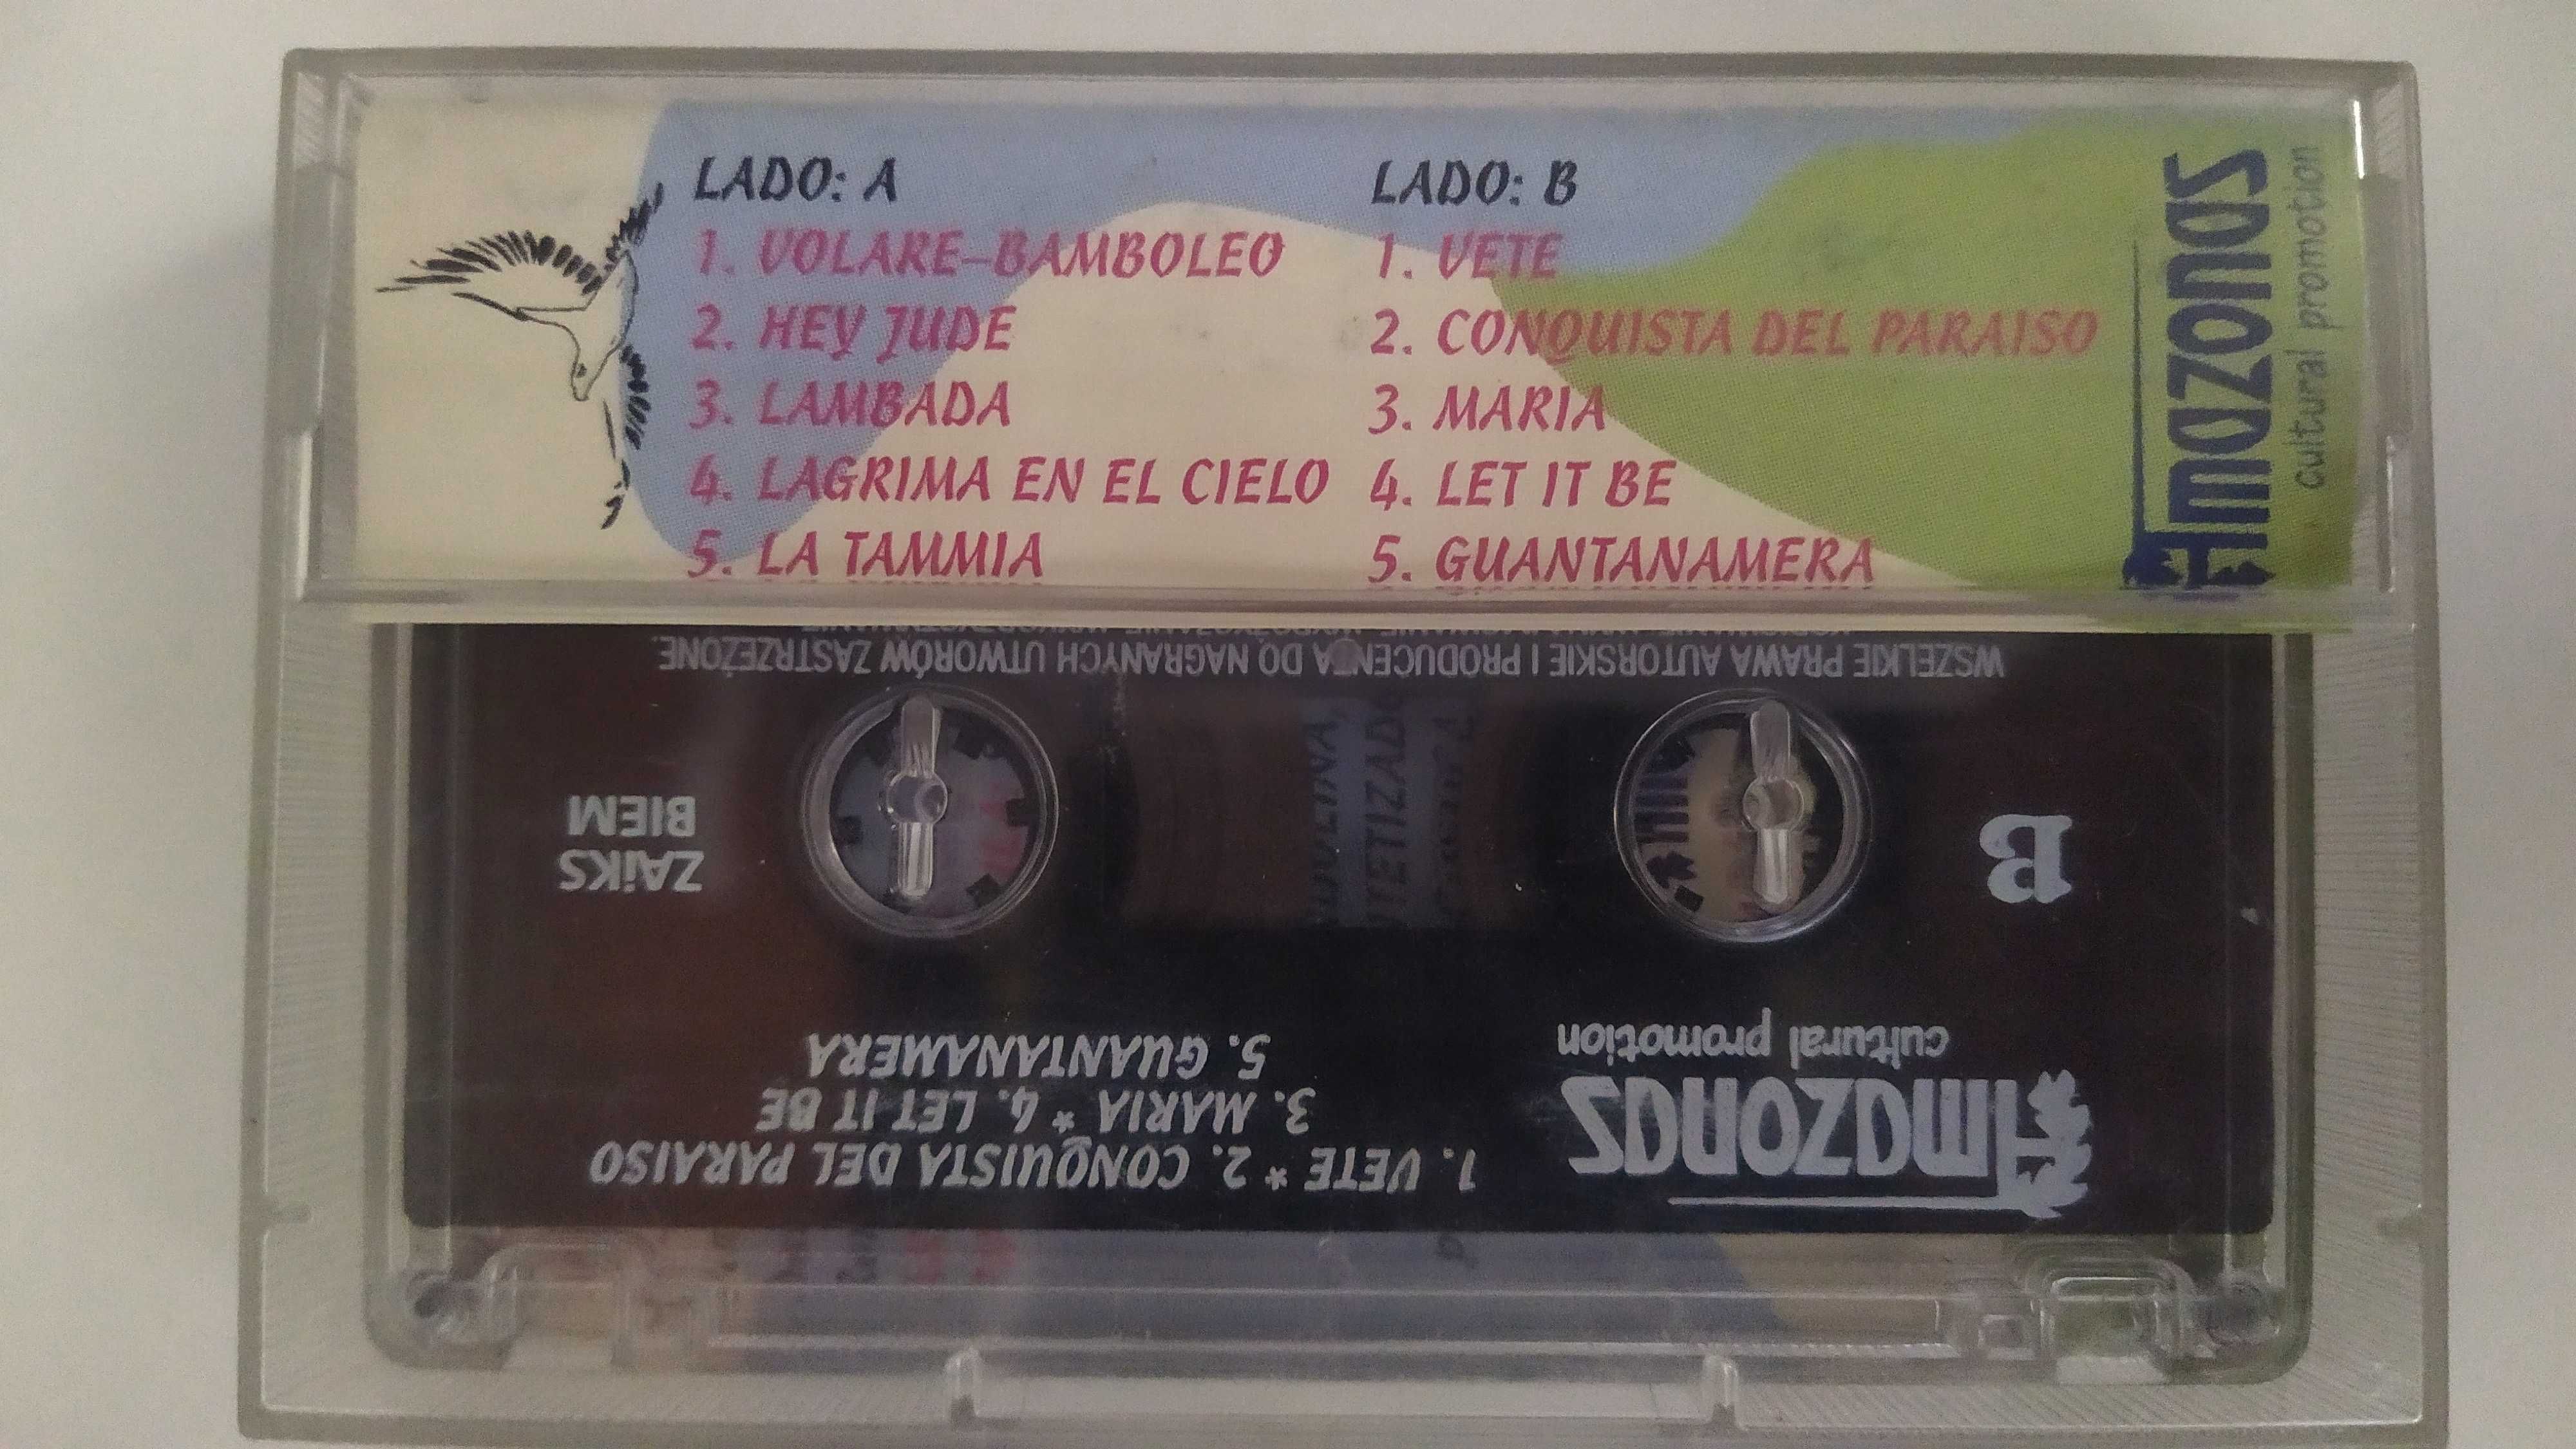 Quillapas Greatest Hits zespół peruwiański Amazonas kaseta MC